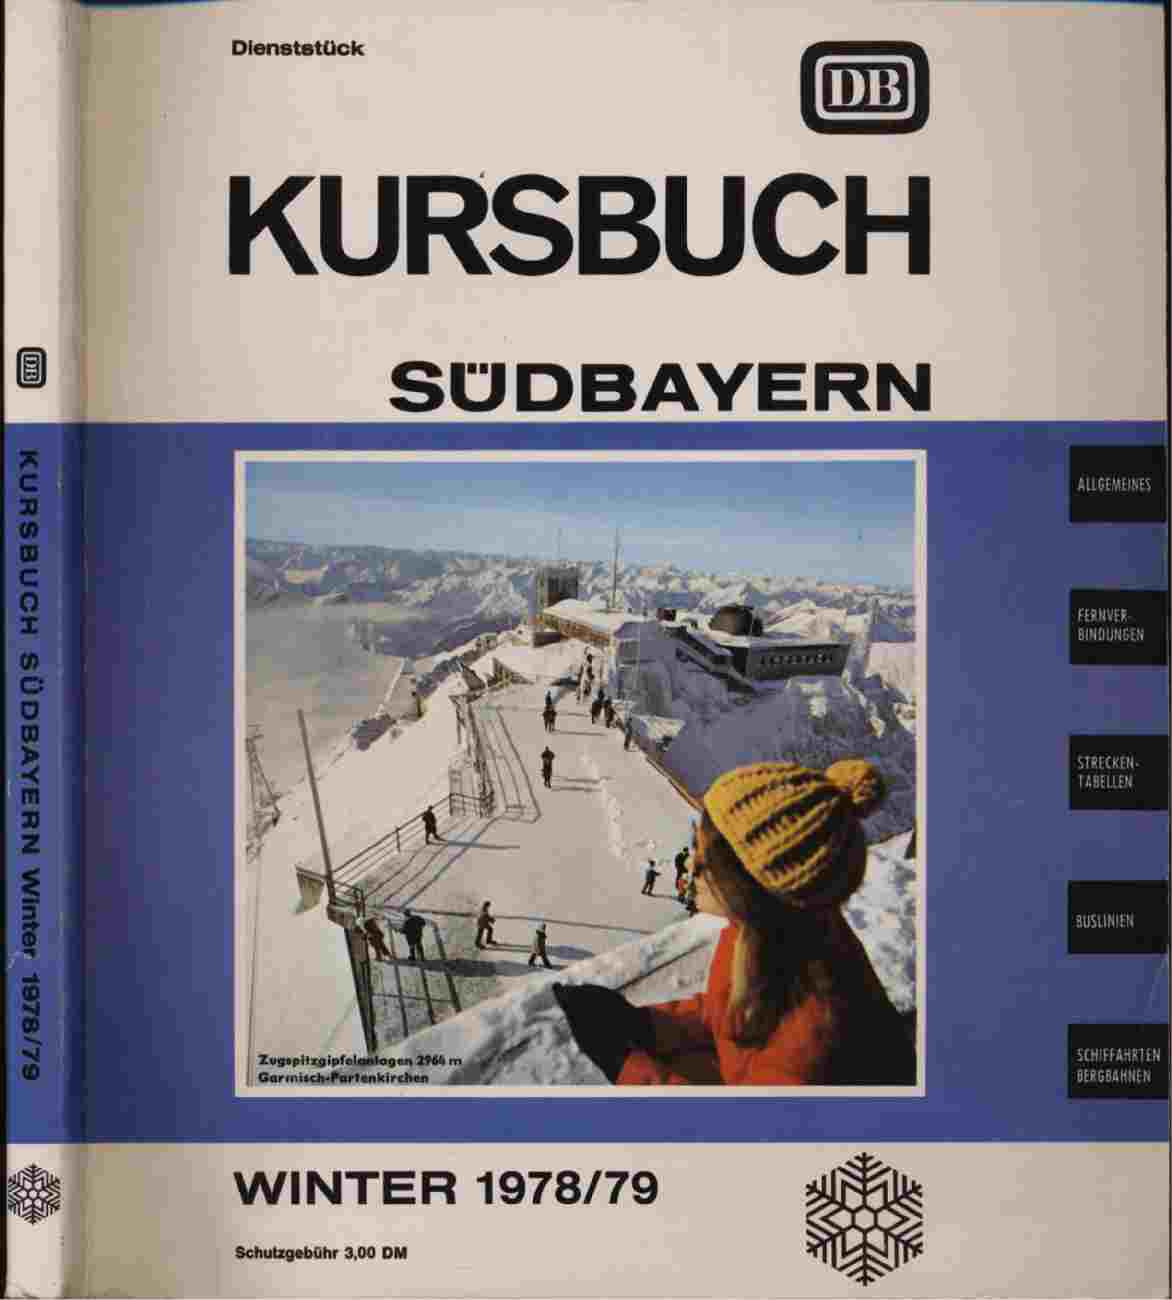   Kursbuch Südbayern Winter 1978/79, gültig vom 1. Oktober 1978 bis 26. Mai 1979. 